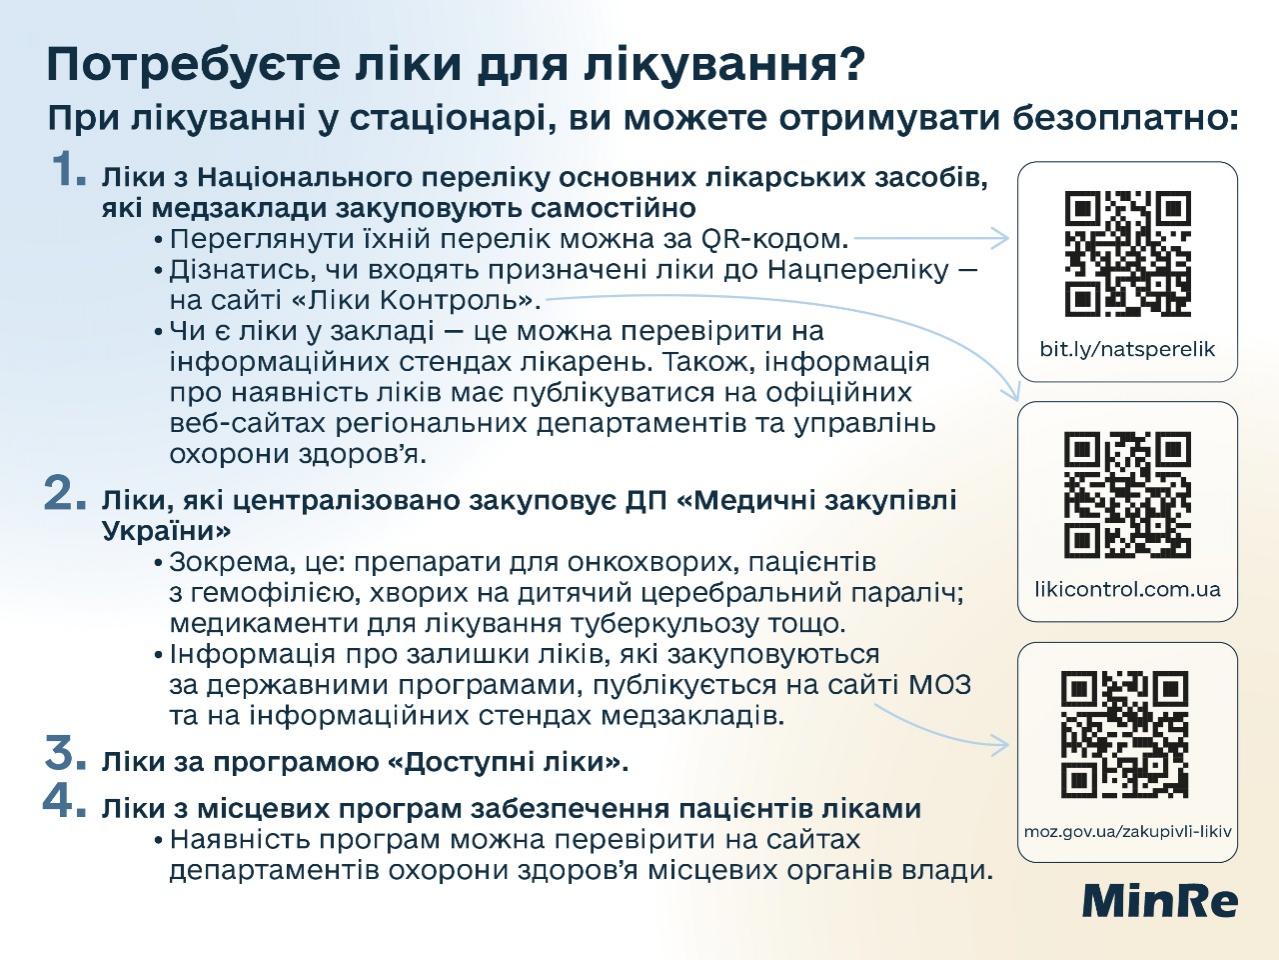 http://dunrada.gov.ua/uploadfile/archive_news/2022/09/30/2022-09-30_3989/images/images-53026.jpg